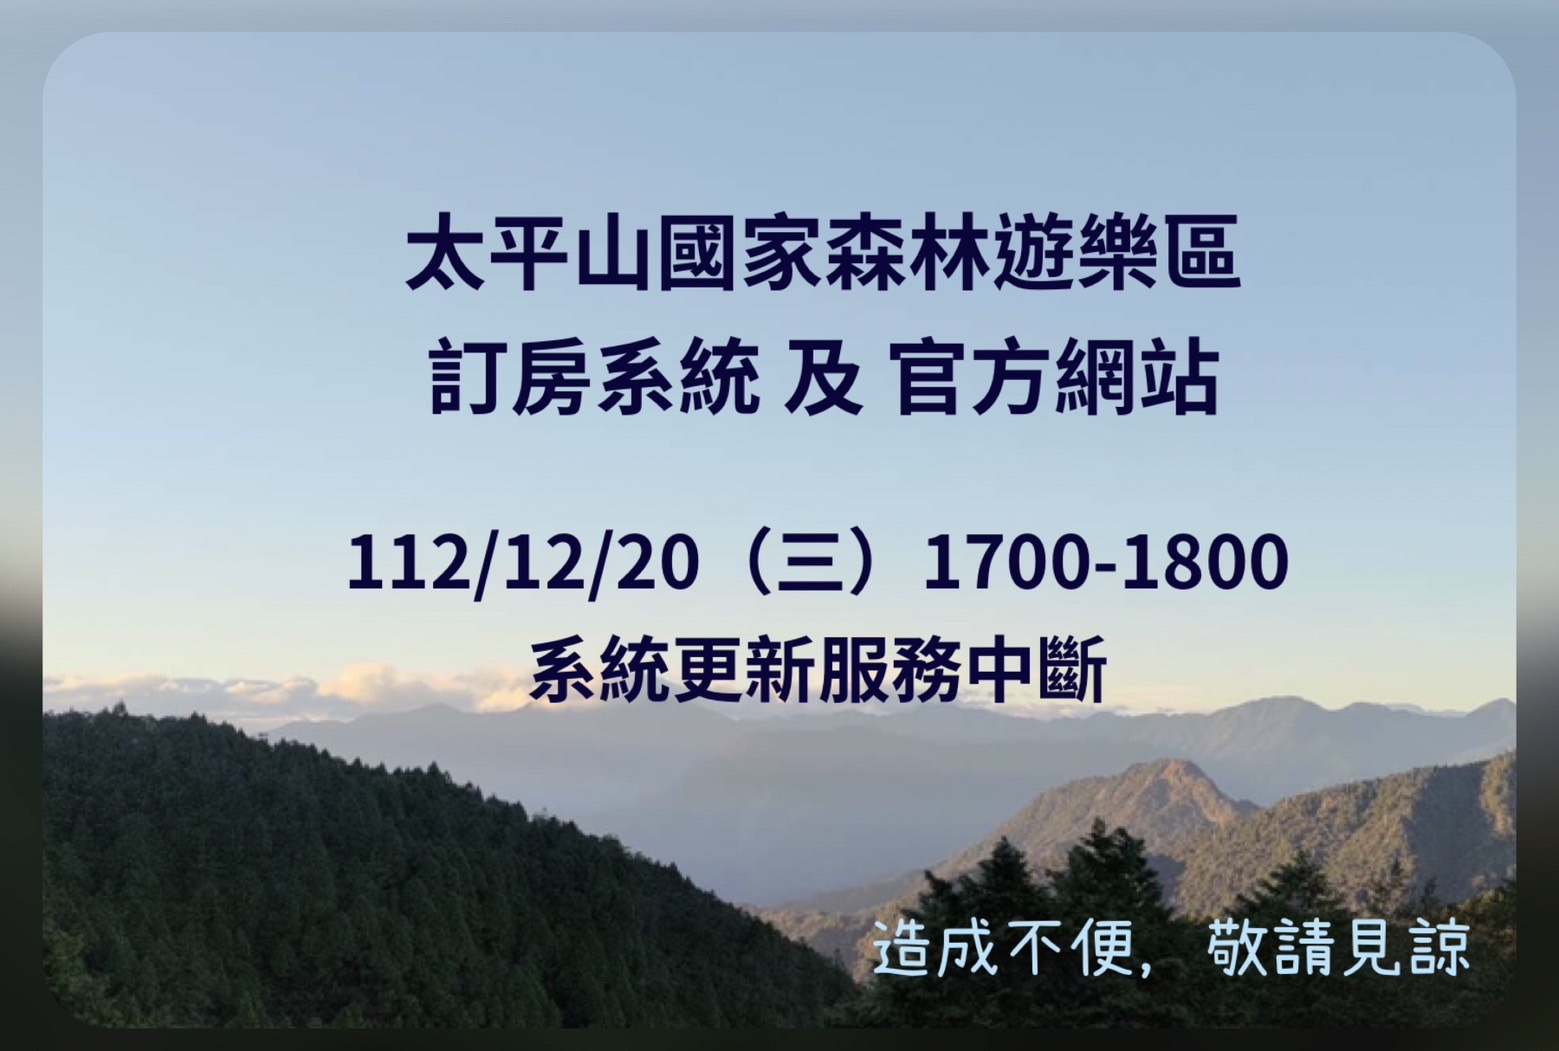 太平山訂房系統及 官網訂於112/12/20 (三) 17:00-18:00 進行系統更新，作業期間服務中斷。